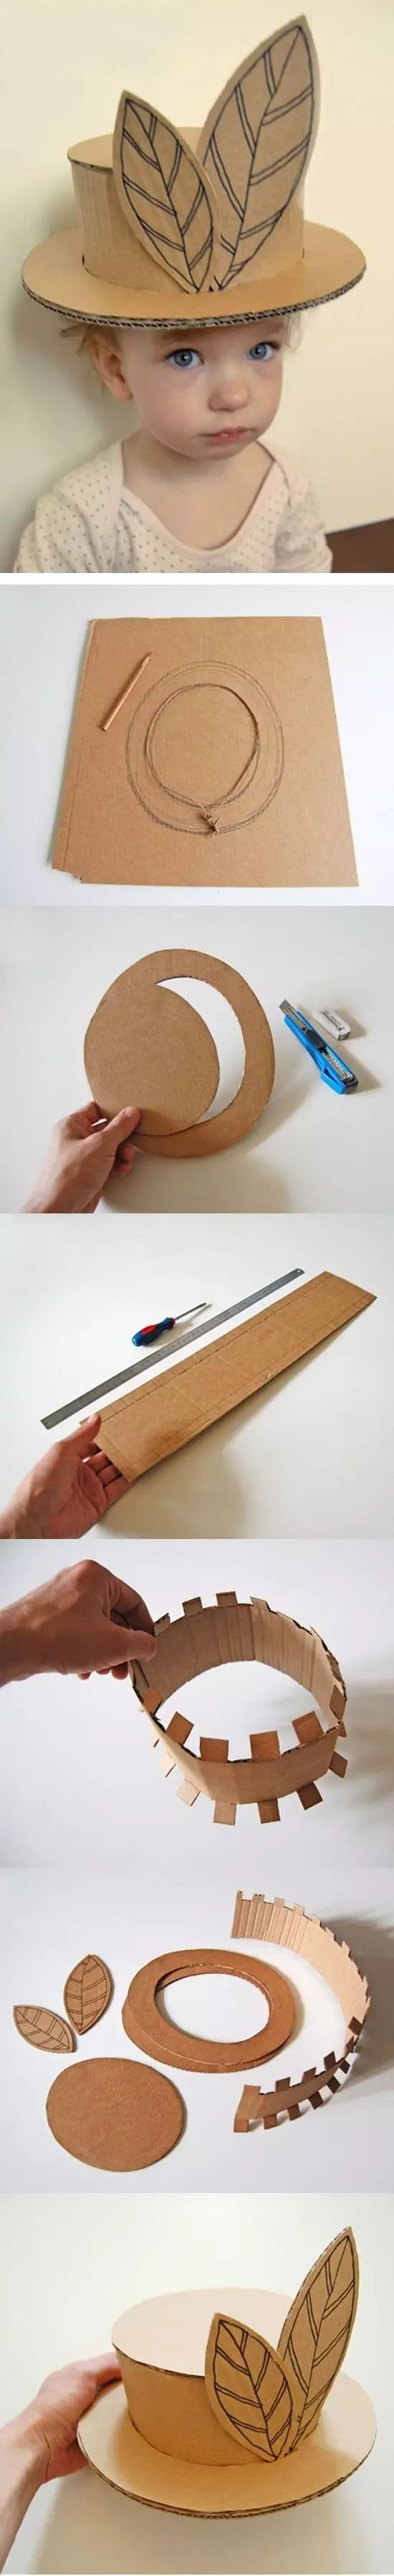 纸壳手工 制作方法图片